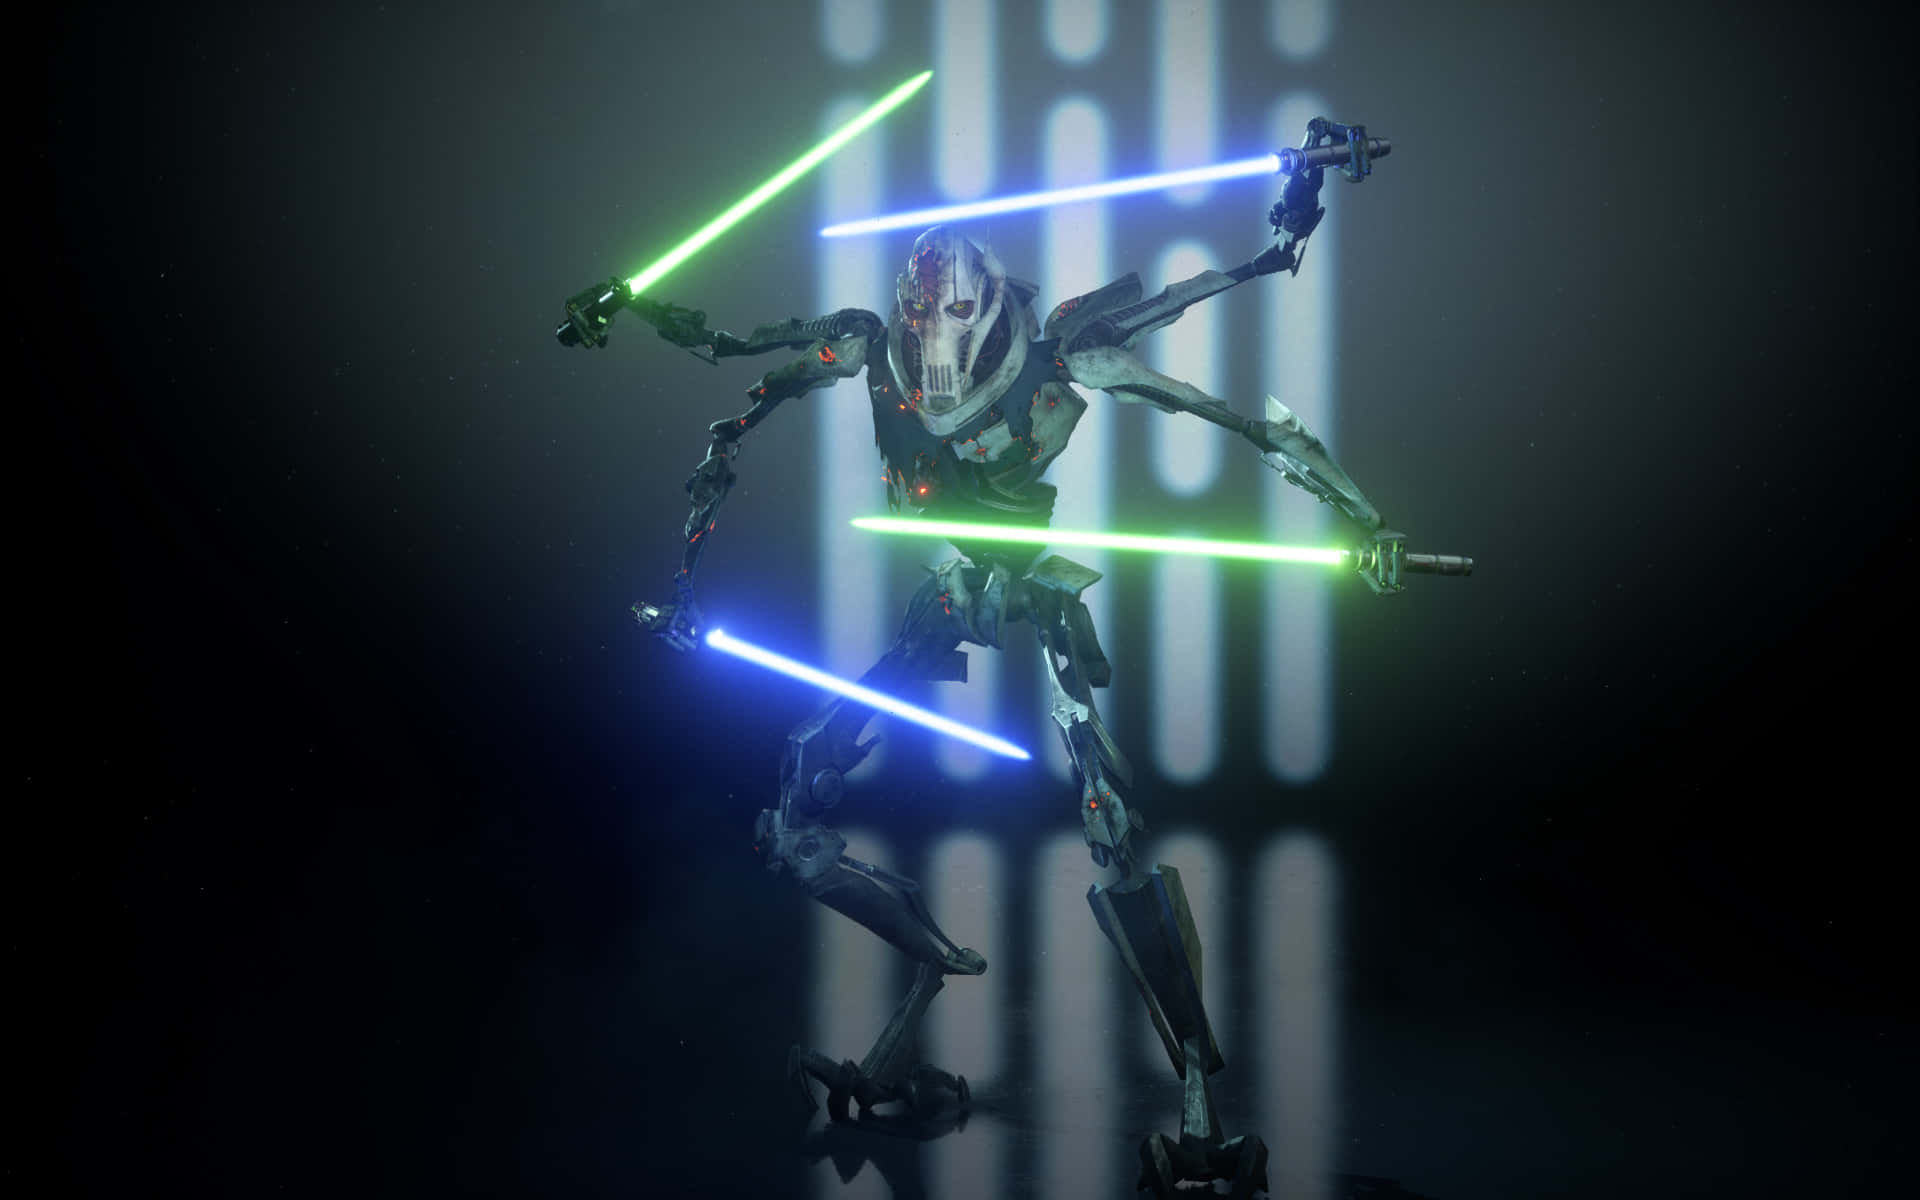 General Grievous, en leder af Separatist Droid Army i Star Wars, står klar til kamp. Wallpaper